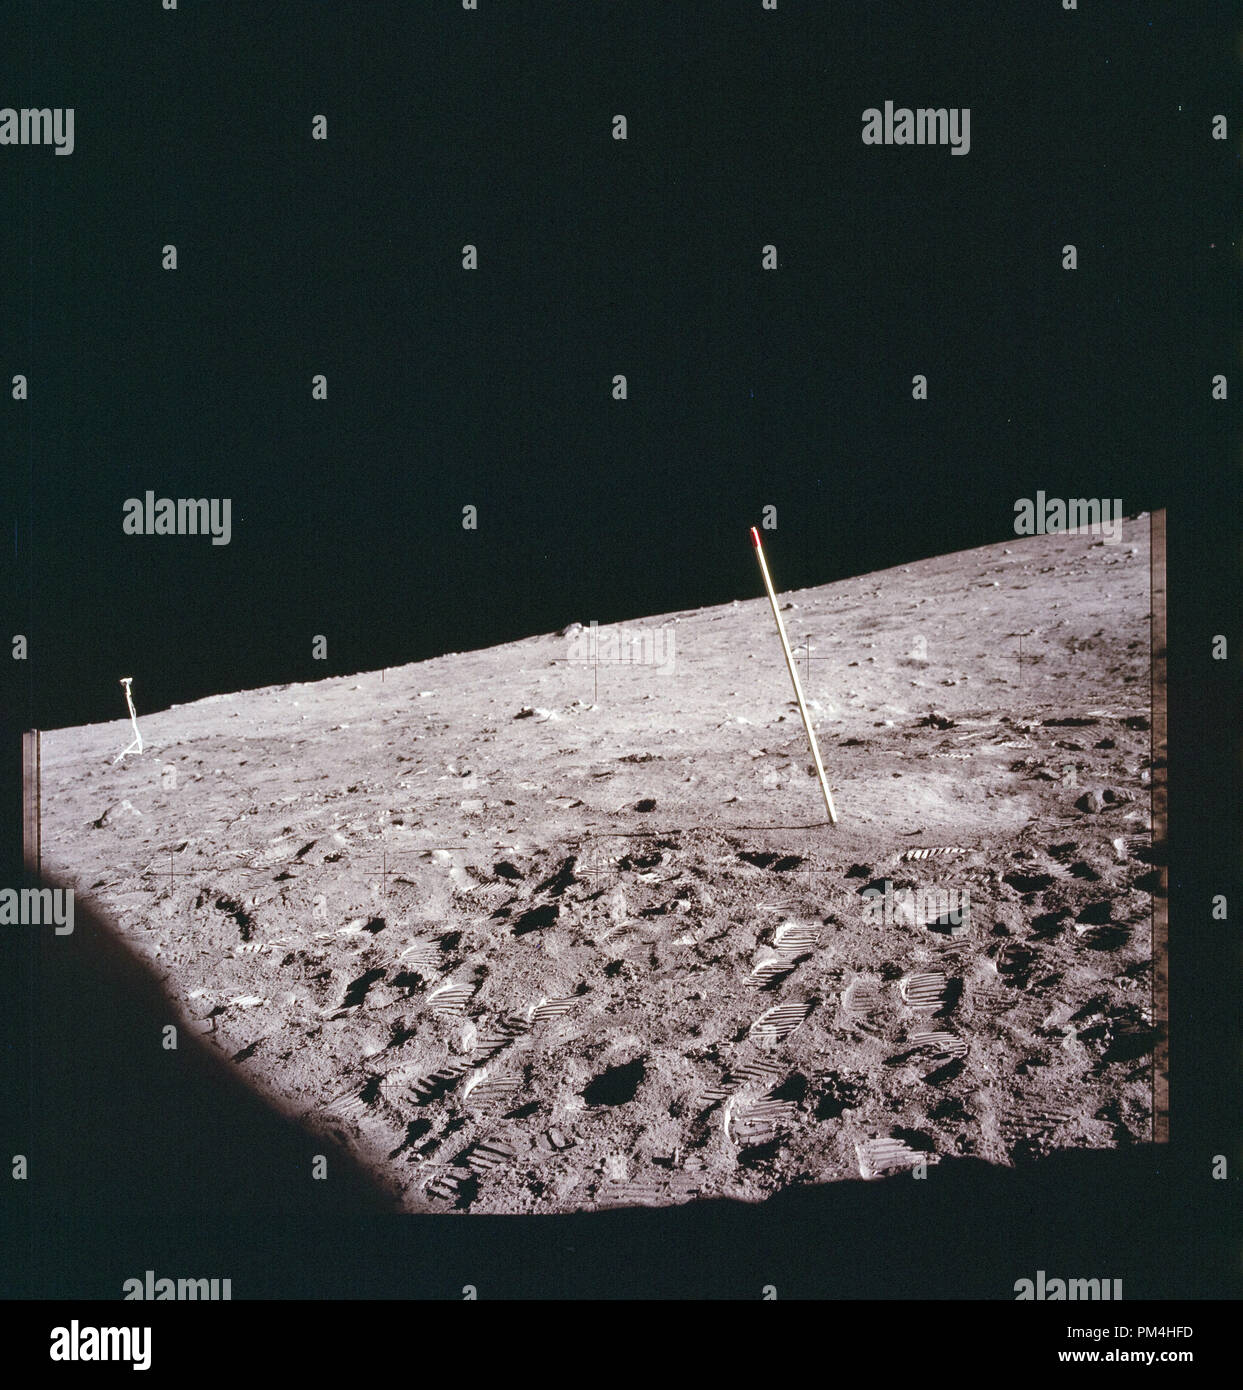 Die Oberfläche des Mondes im Juli 20, 1969 die Geschichte der Reise auf den Mond und die anschließende Mondlandung. Datei Referenz Nr. 1003 313 THA Stockfoto